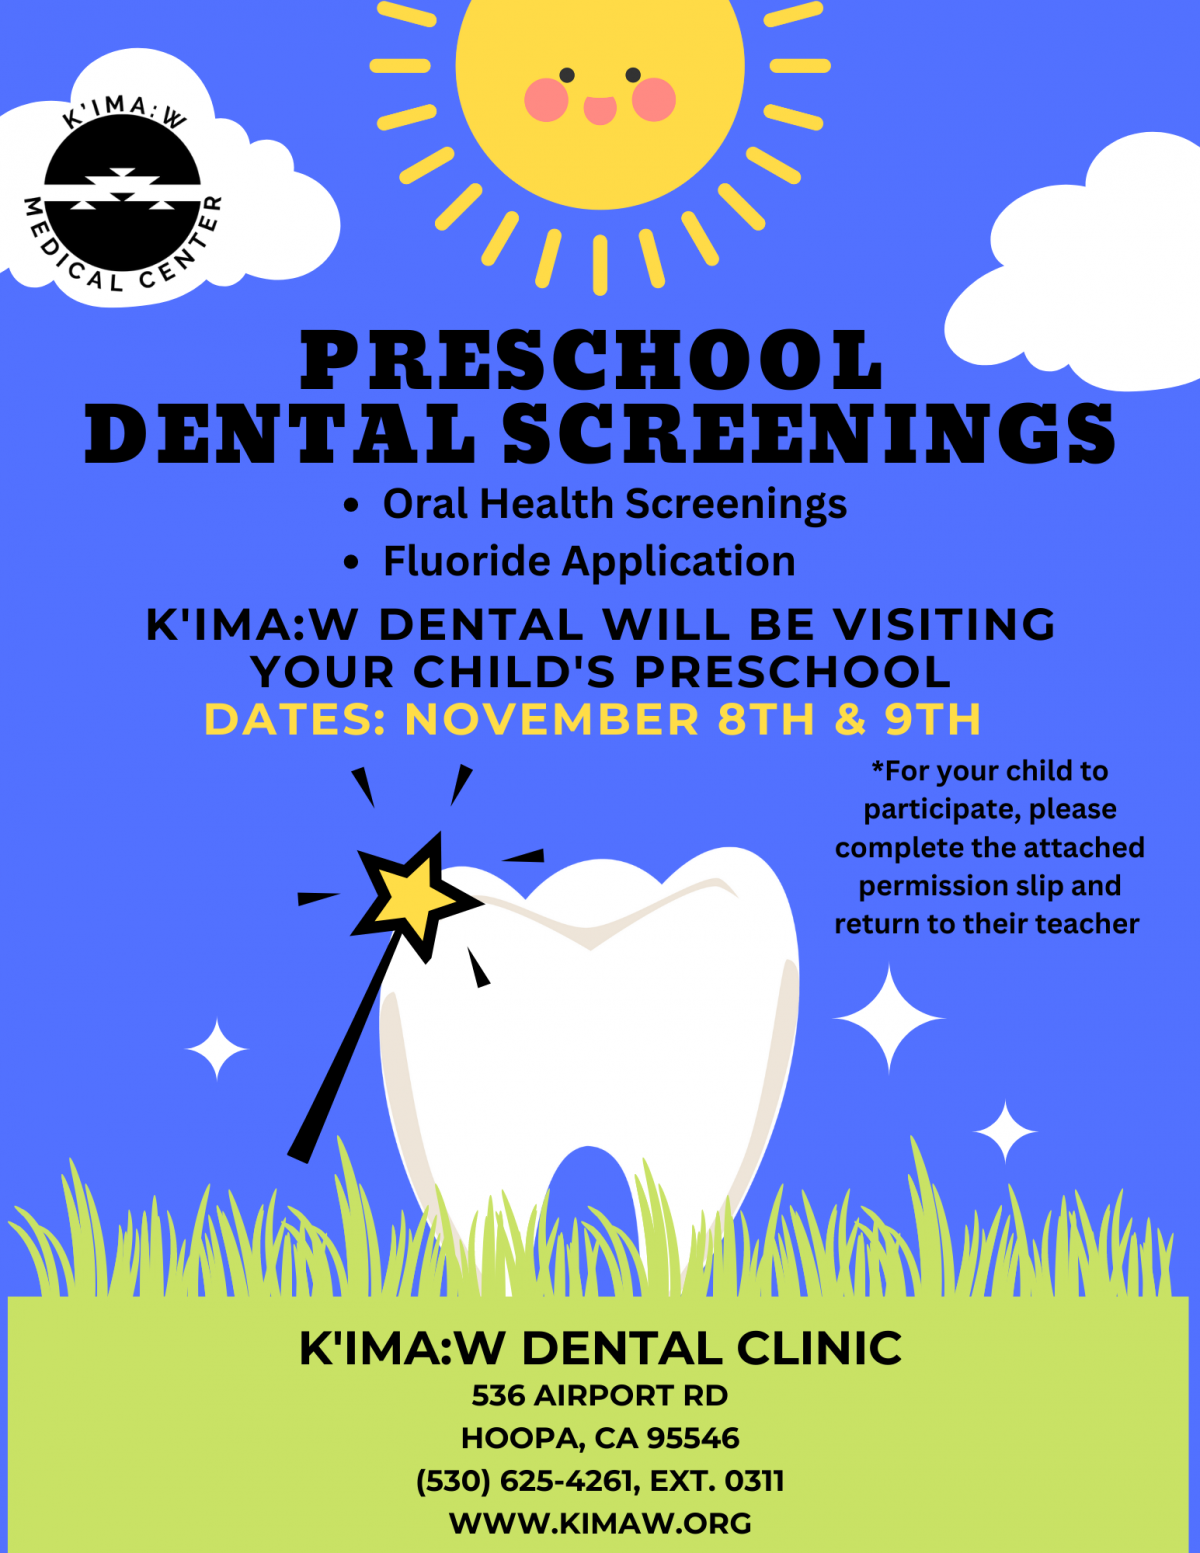 KMC Dental Clinic Preschool Screenings